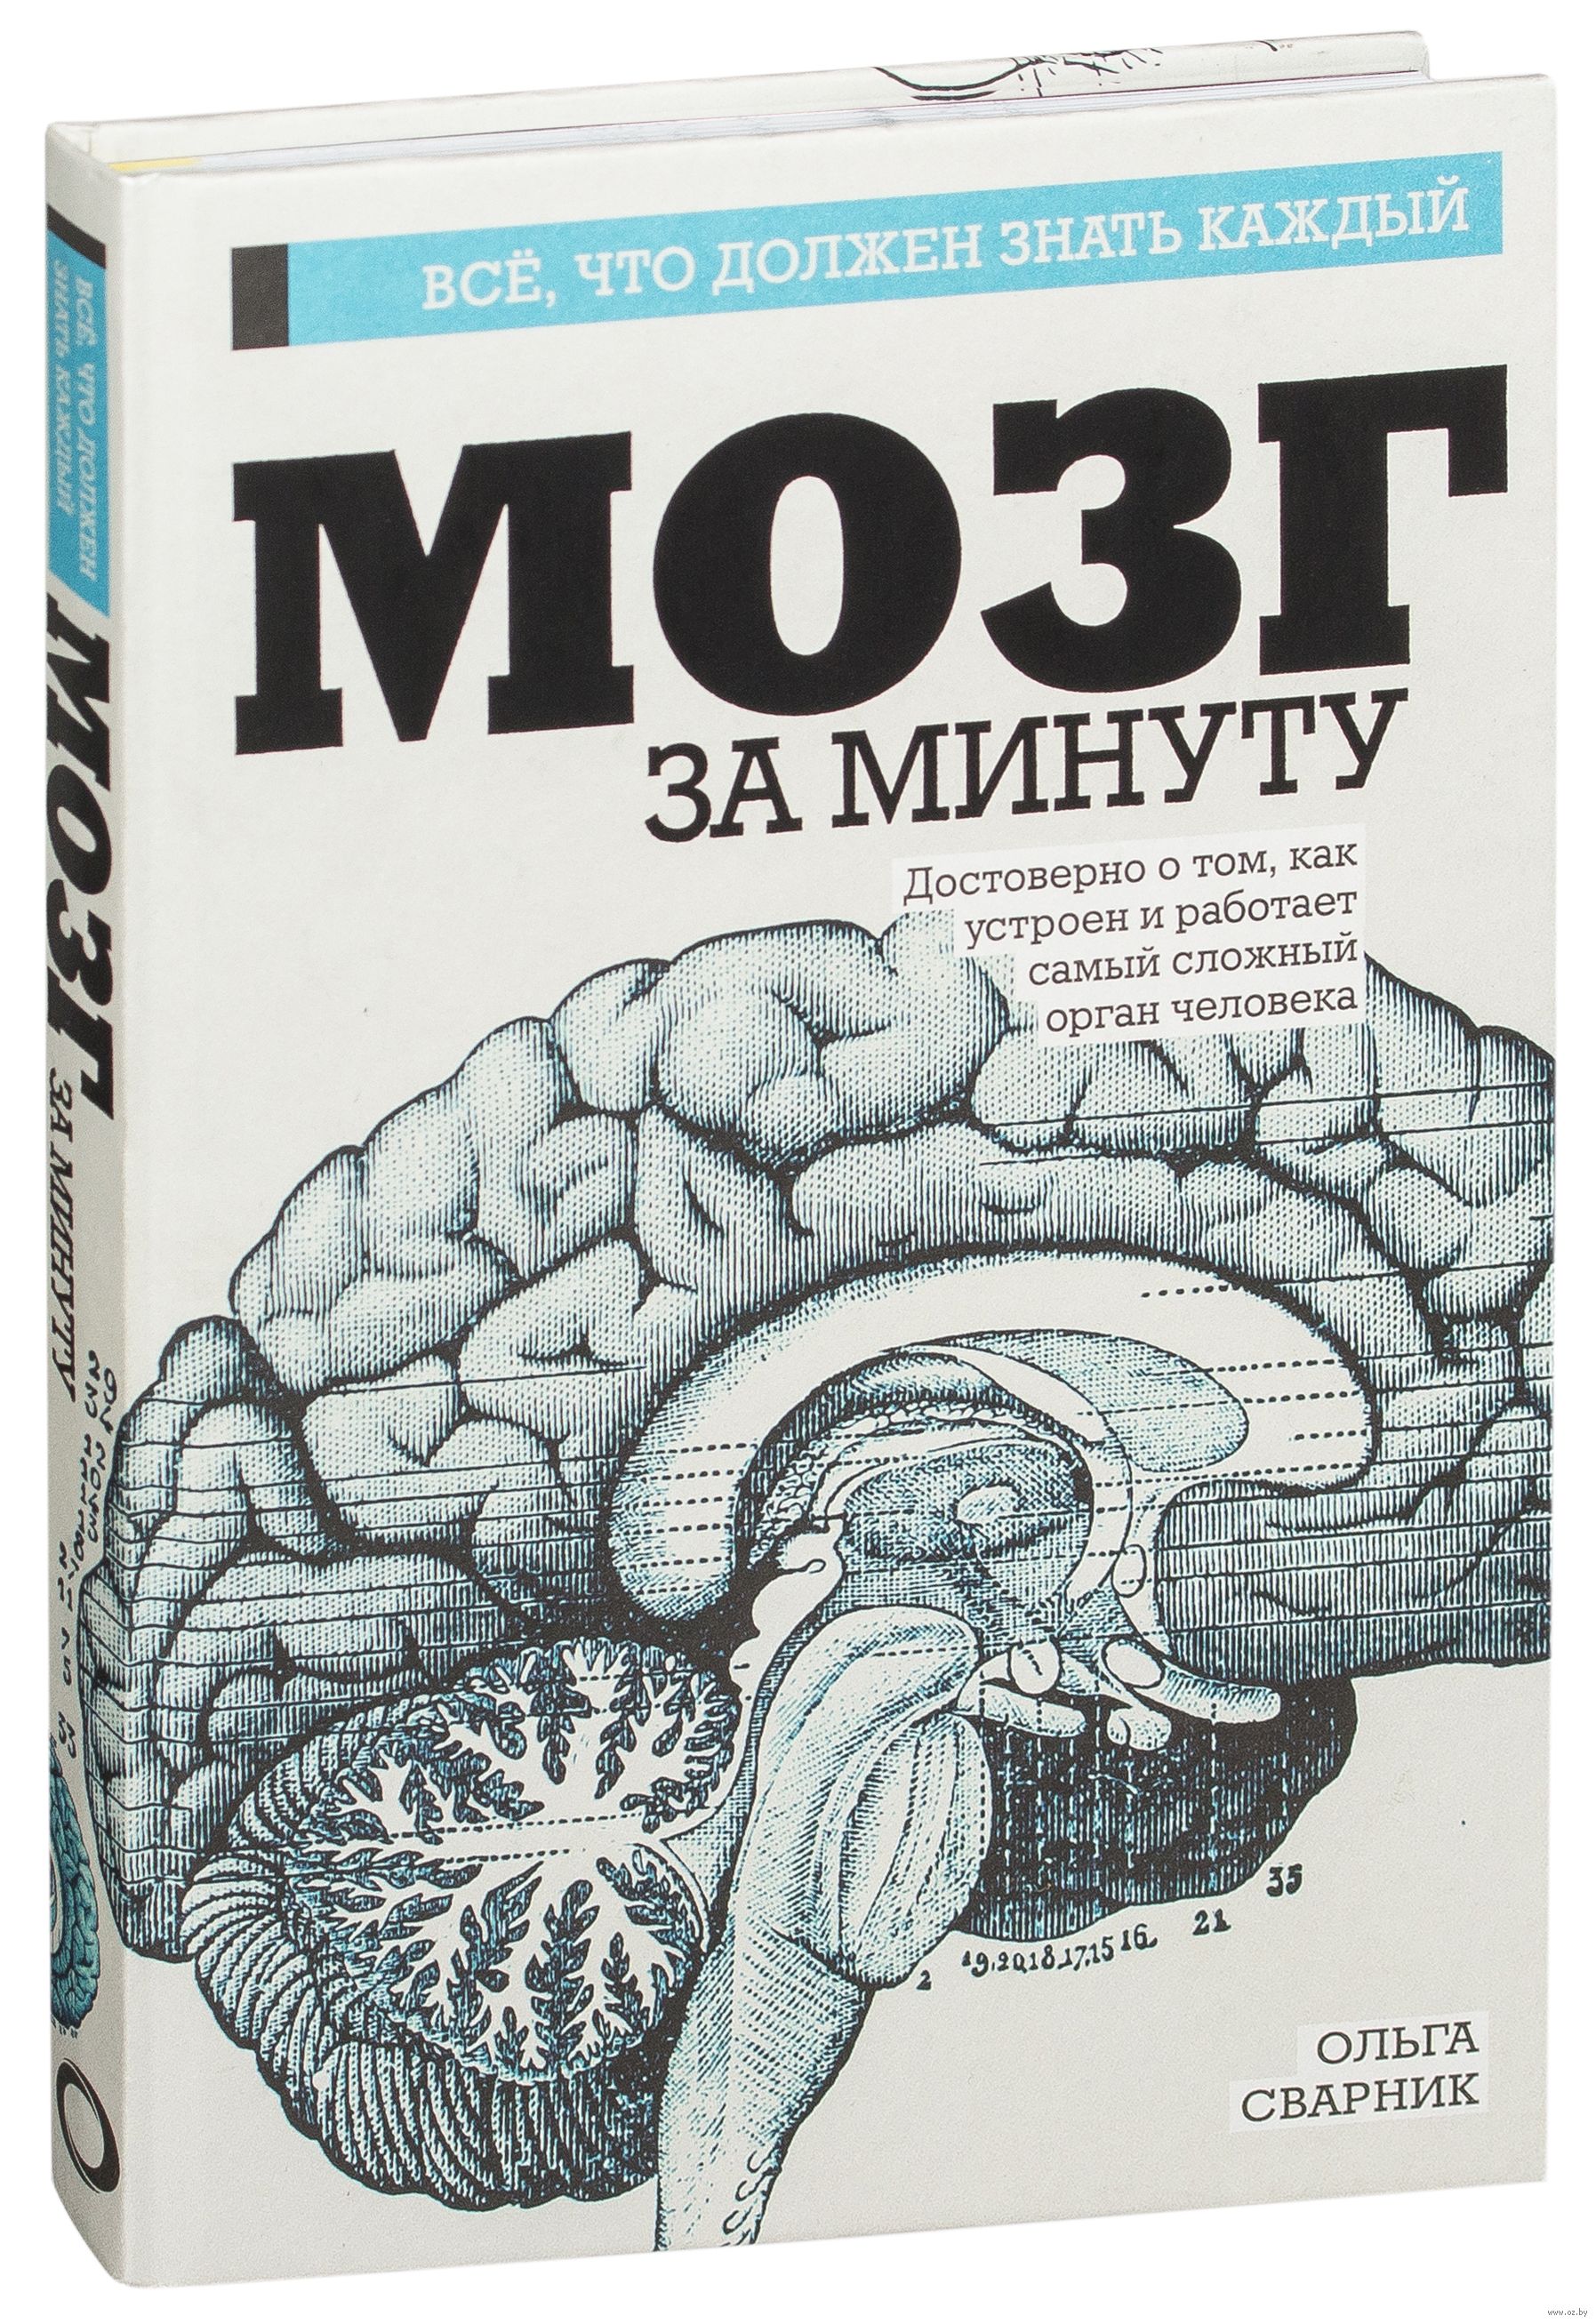 Book brain